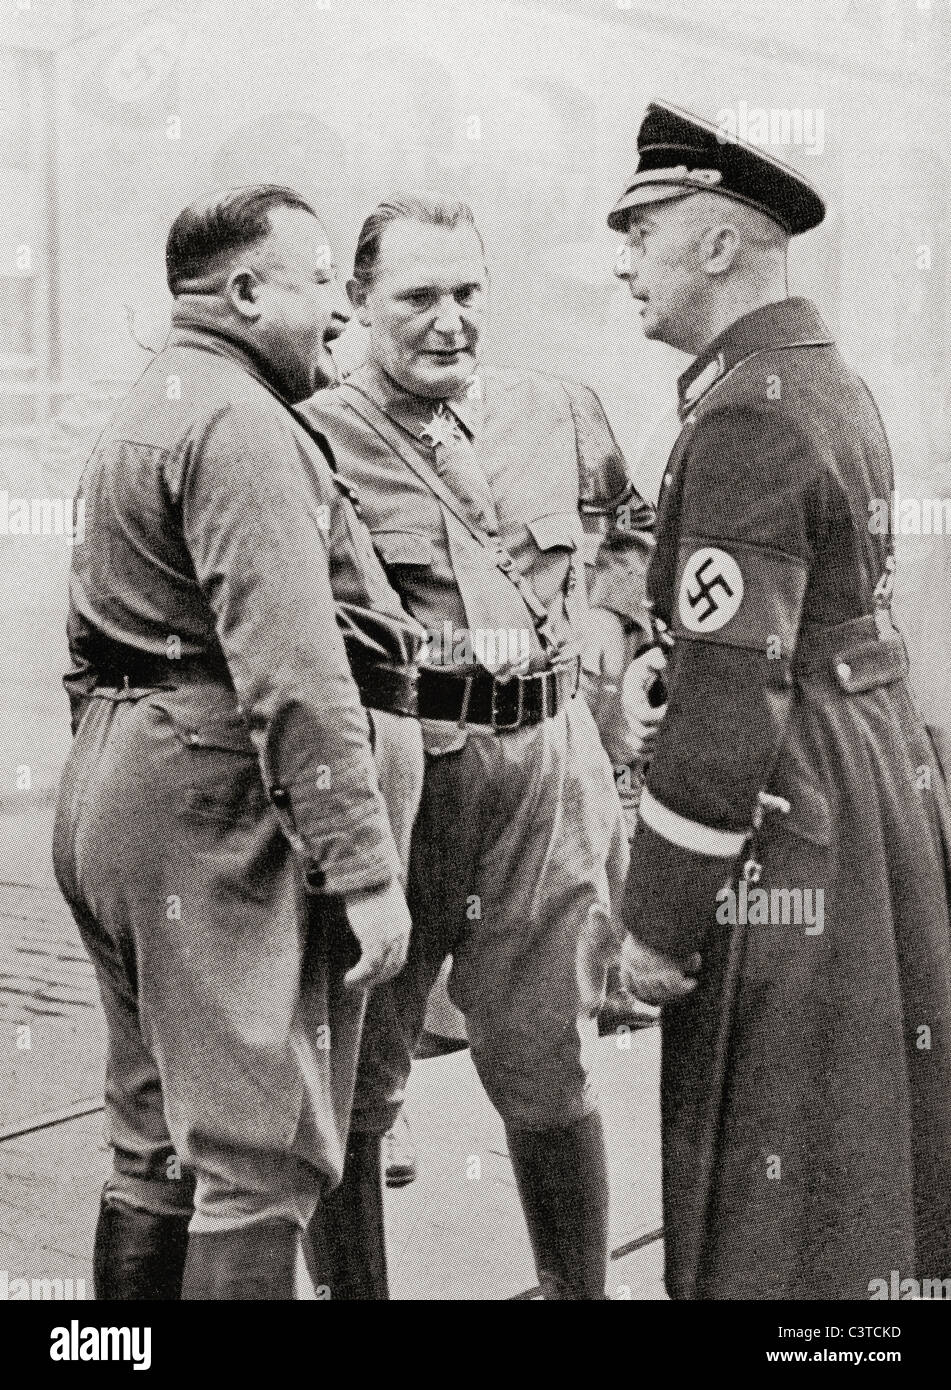 Mitglieder des Ordens Blut.  Von links nach rechts: Christian Weber, Hermann Goering und Heinrich Himmler. Stockfoto